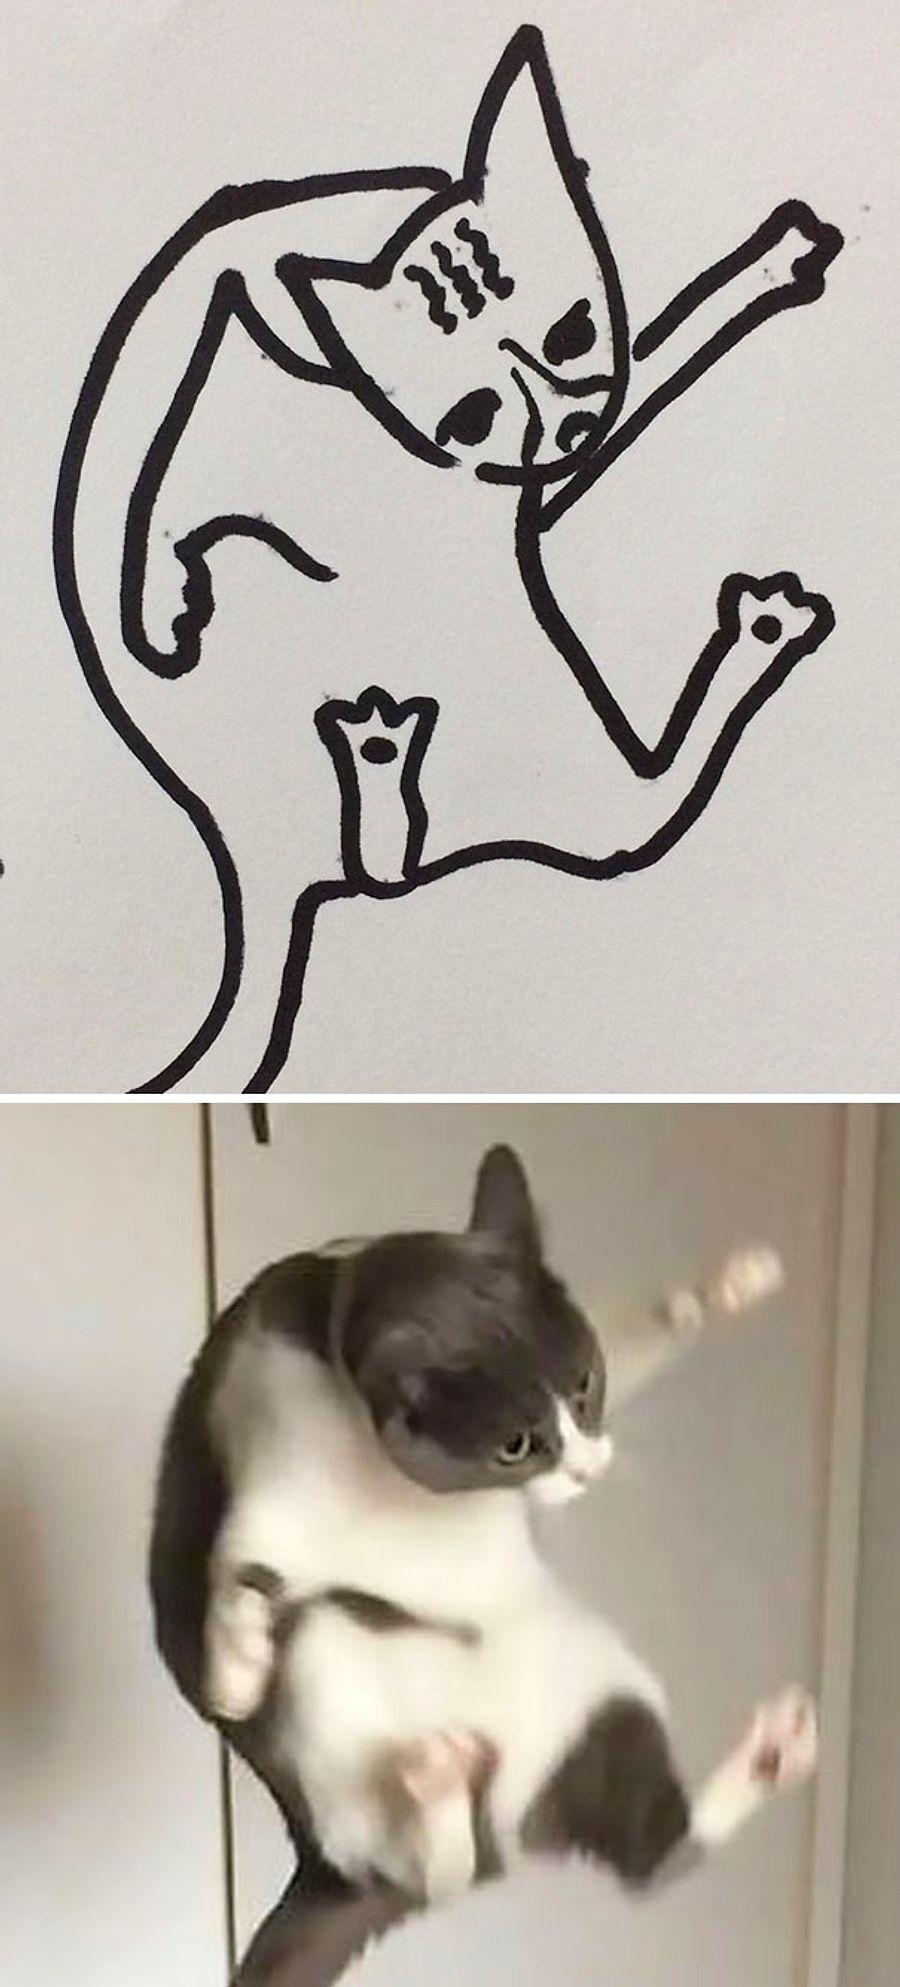 Yeteneksiz Ressamlarin Kedi Cizimlerini Gosteren Birbirinden Tuhaf Ve Soyut 26 Kare